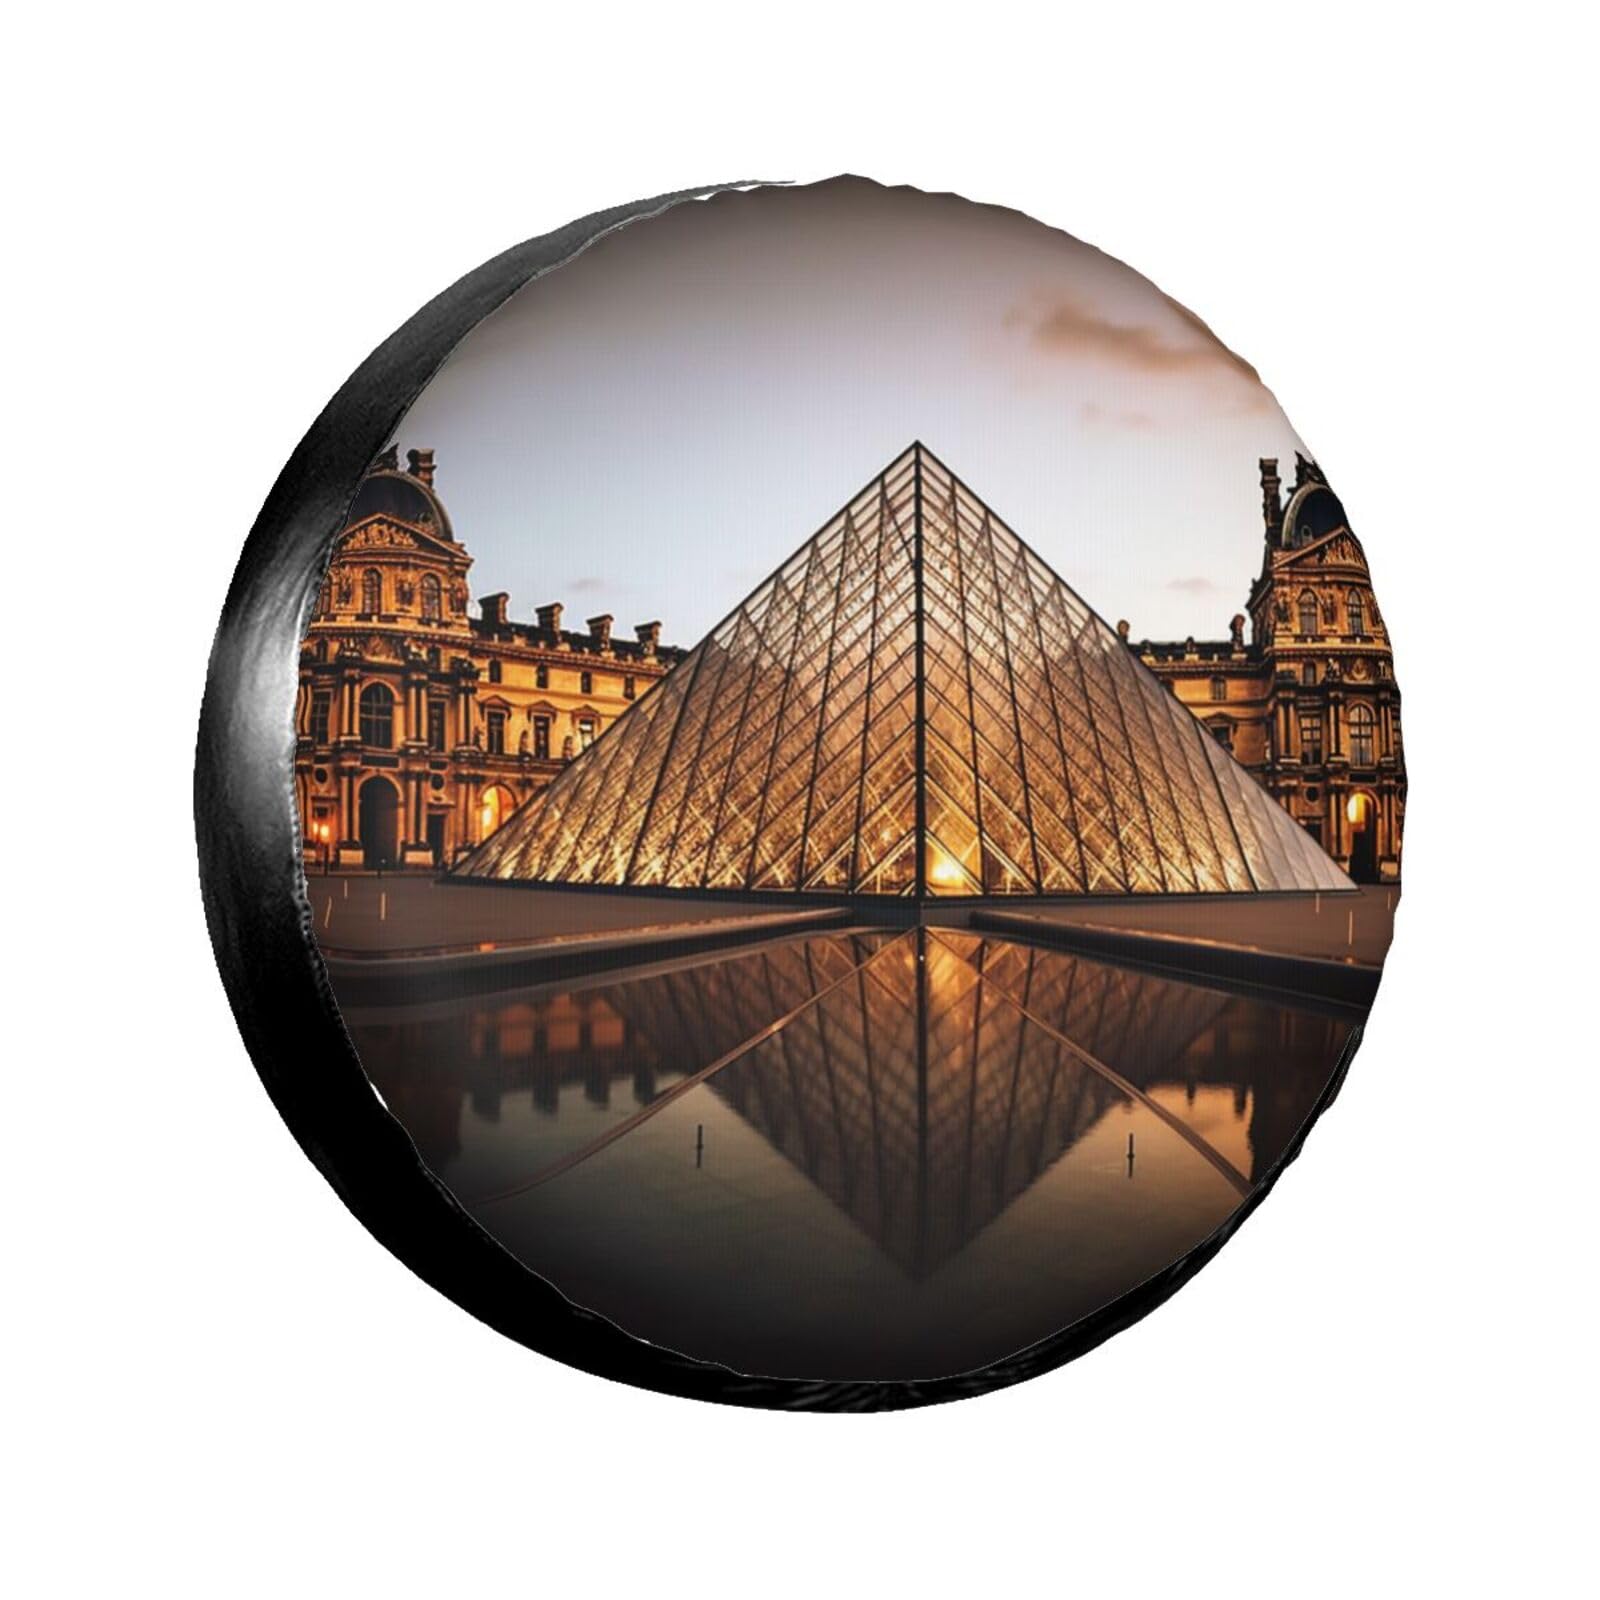 Louvre Museum In Paris Reifenabdeckung, wasserdicht, staubdicht, sonnenfest, Ersatzradabdeckung, geeignet für Anhänger, SUV, LKW usw. 43.2 cm von MMSJSBVY